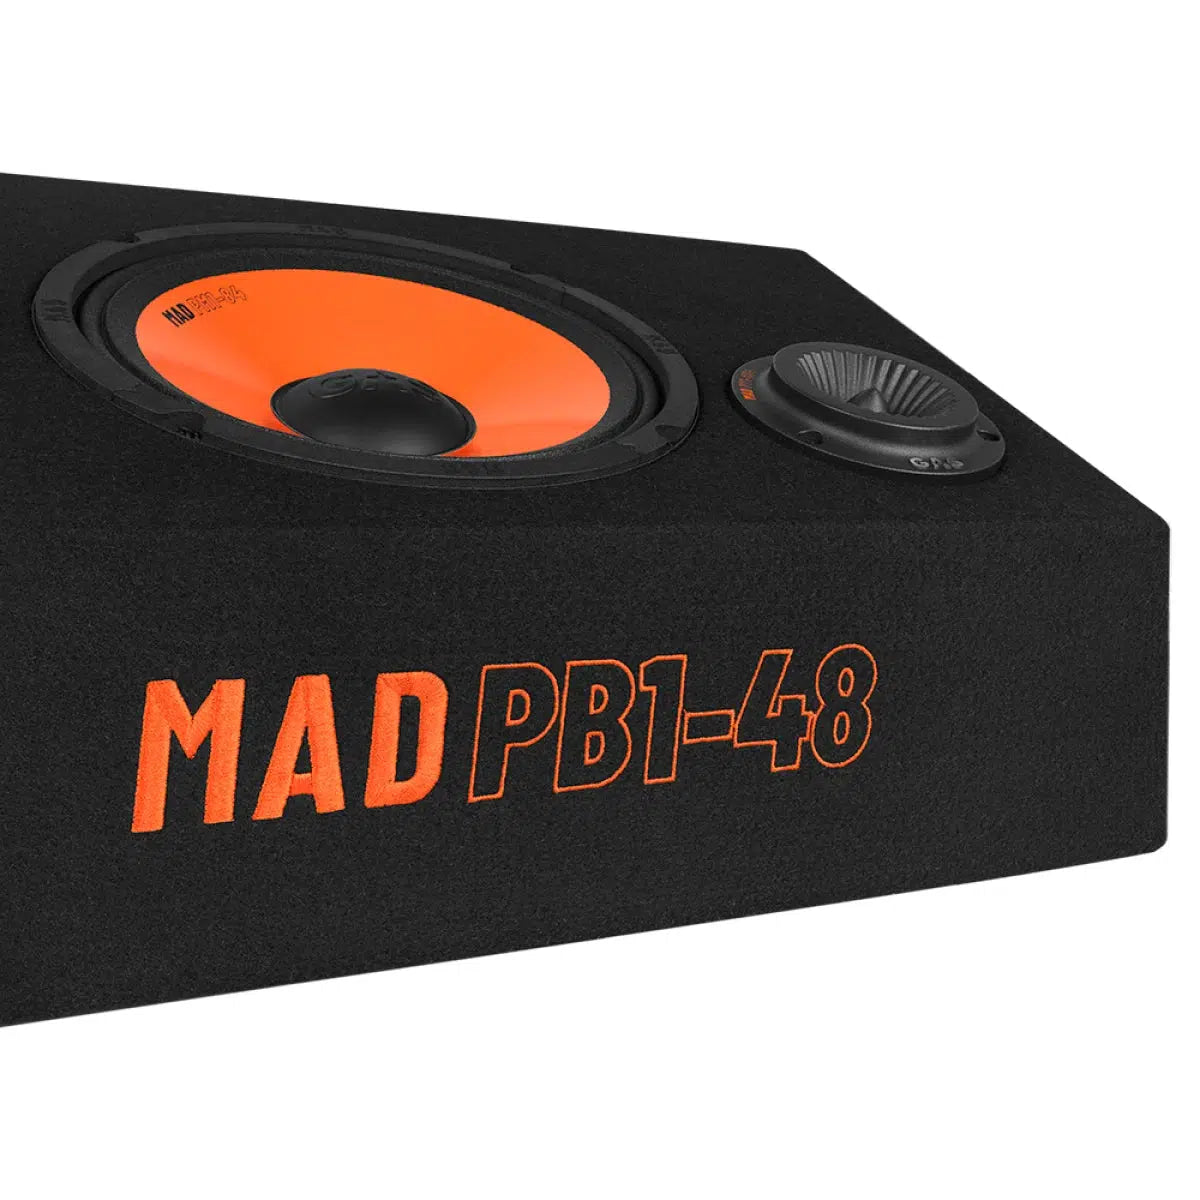 GAS-Mad PB1 48-8" (8cm) Haut-parleurs à caisson-Masori.fr